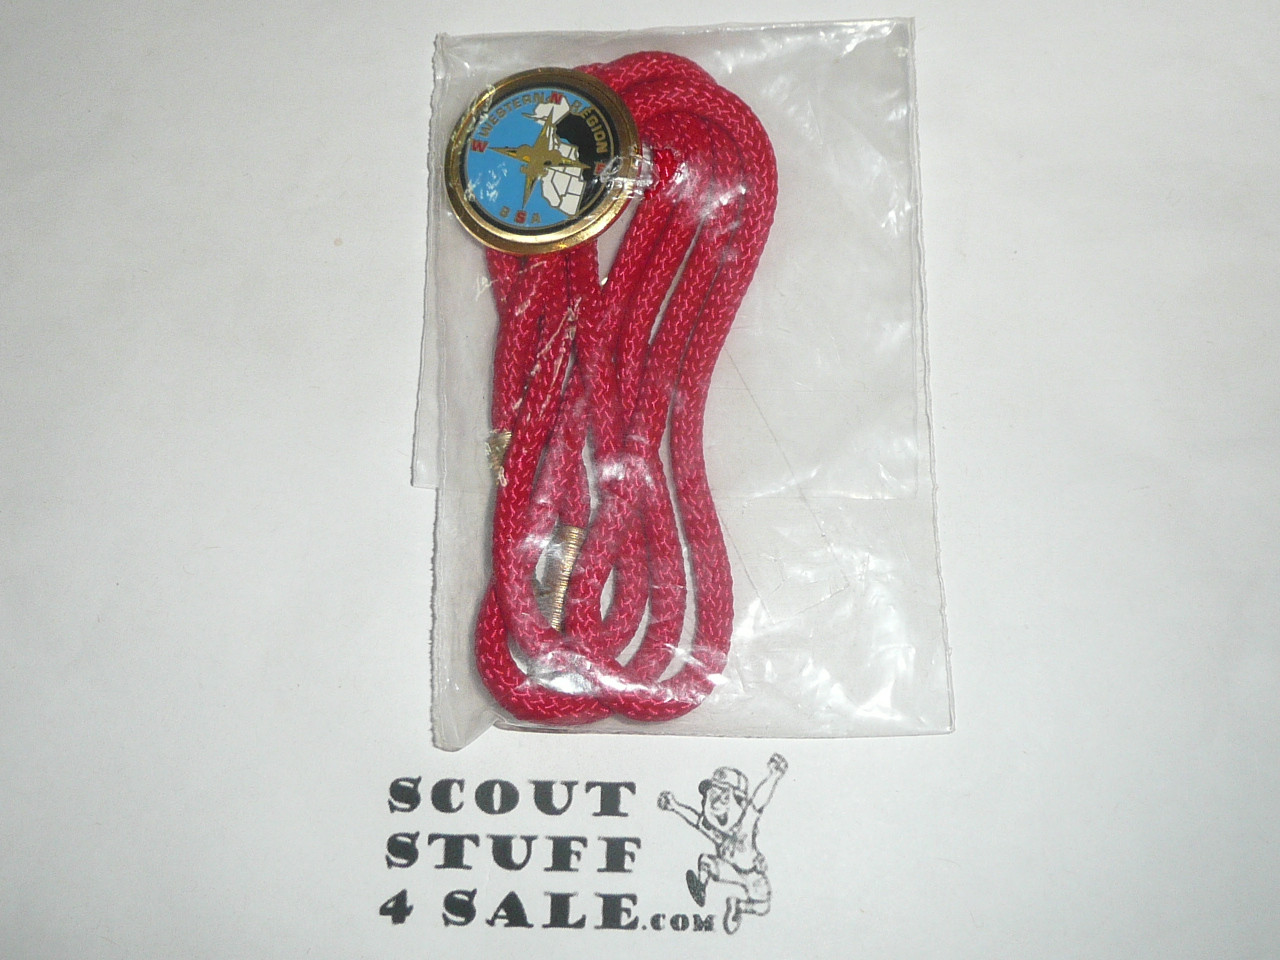 Boy Scout Western Region Bolo Tie, new in bag, 1980's